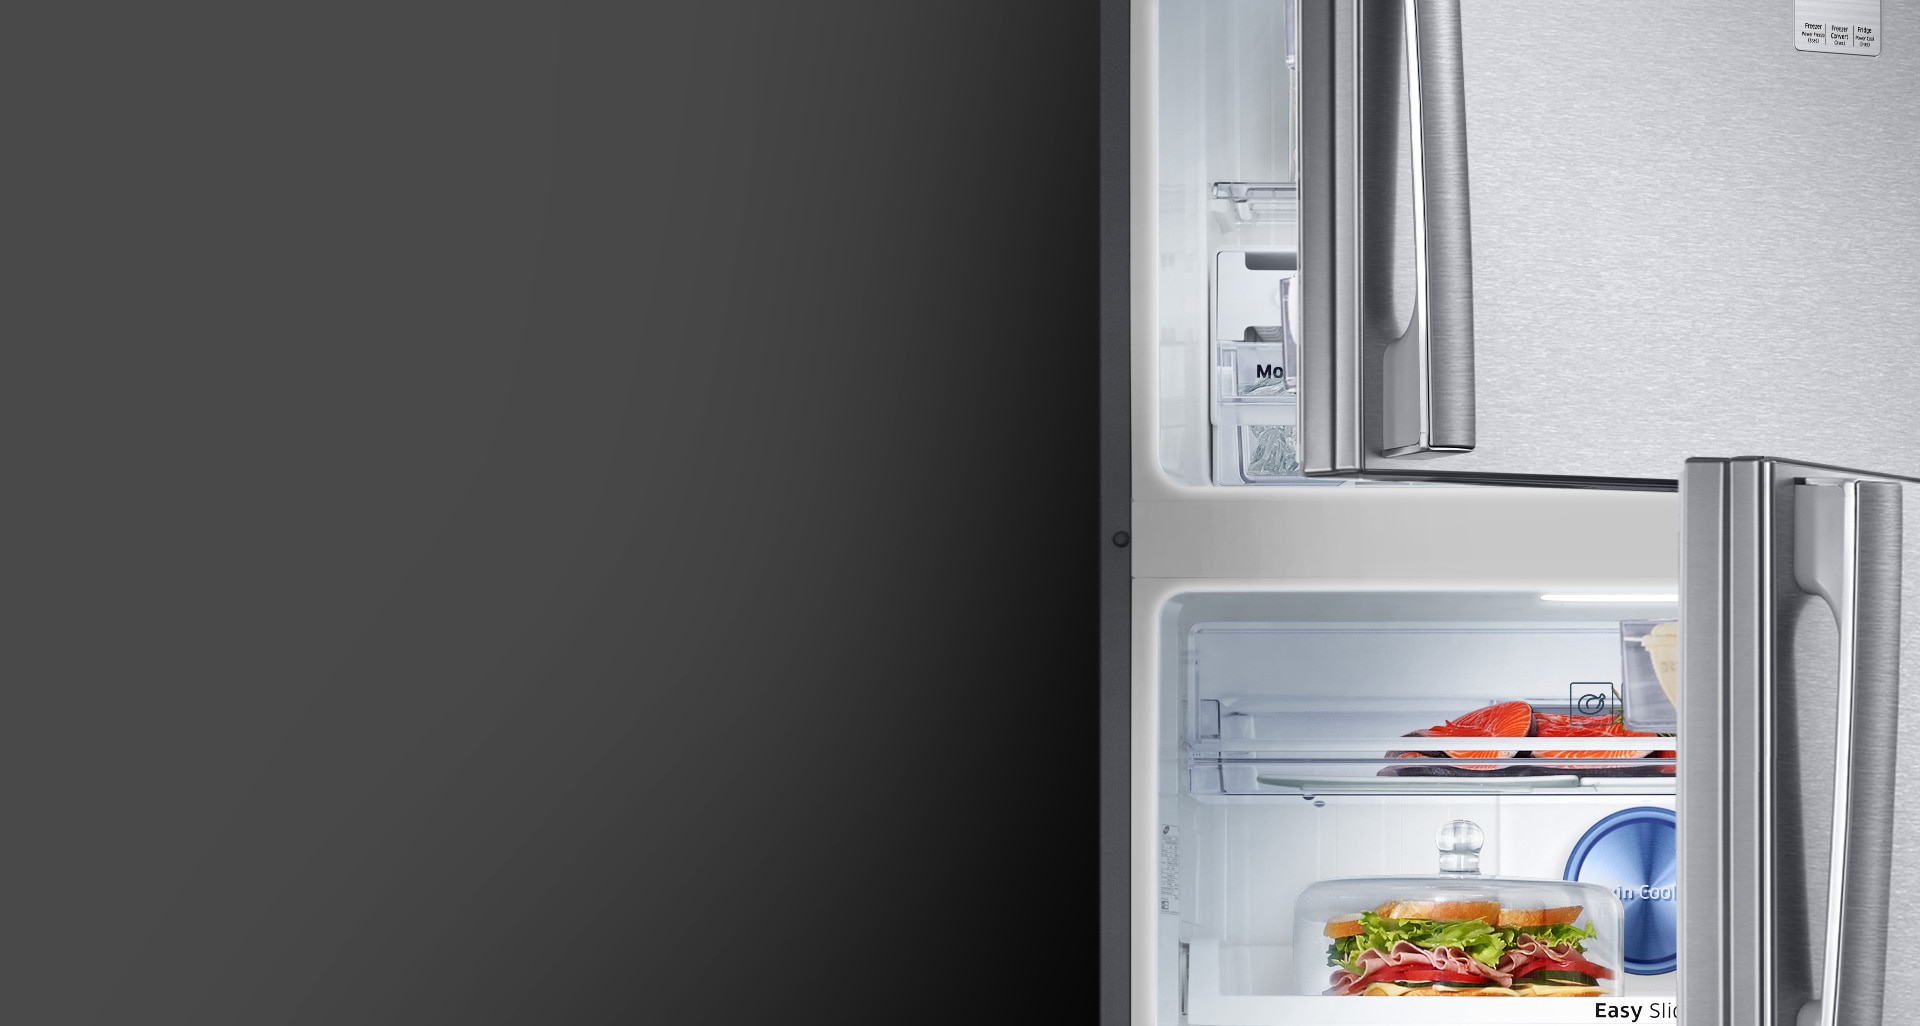 Excellente visibilité à l’intérieur du réfrigérateur